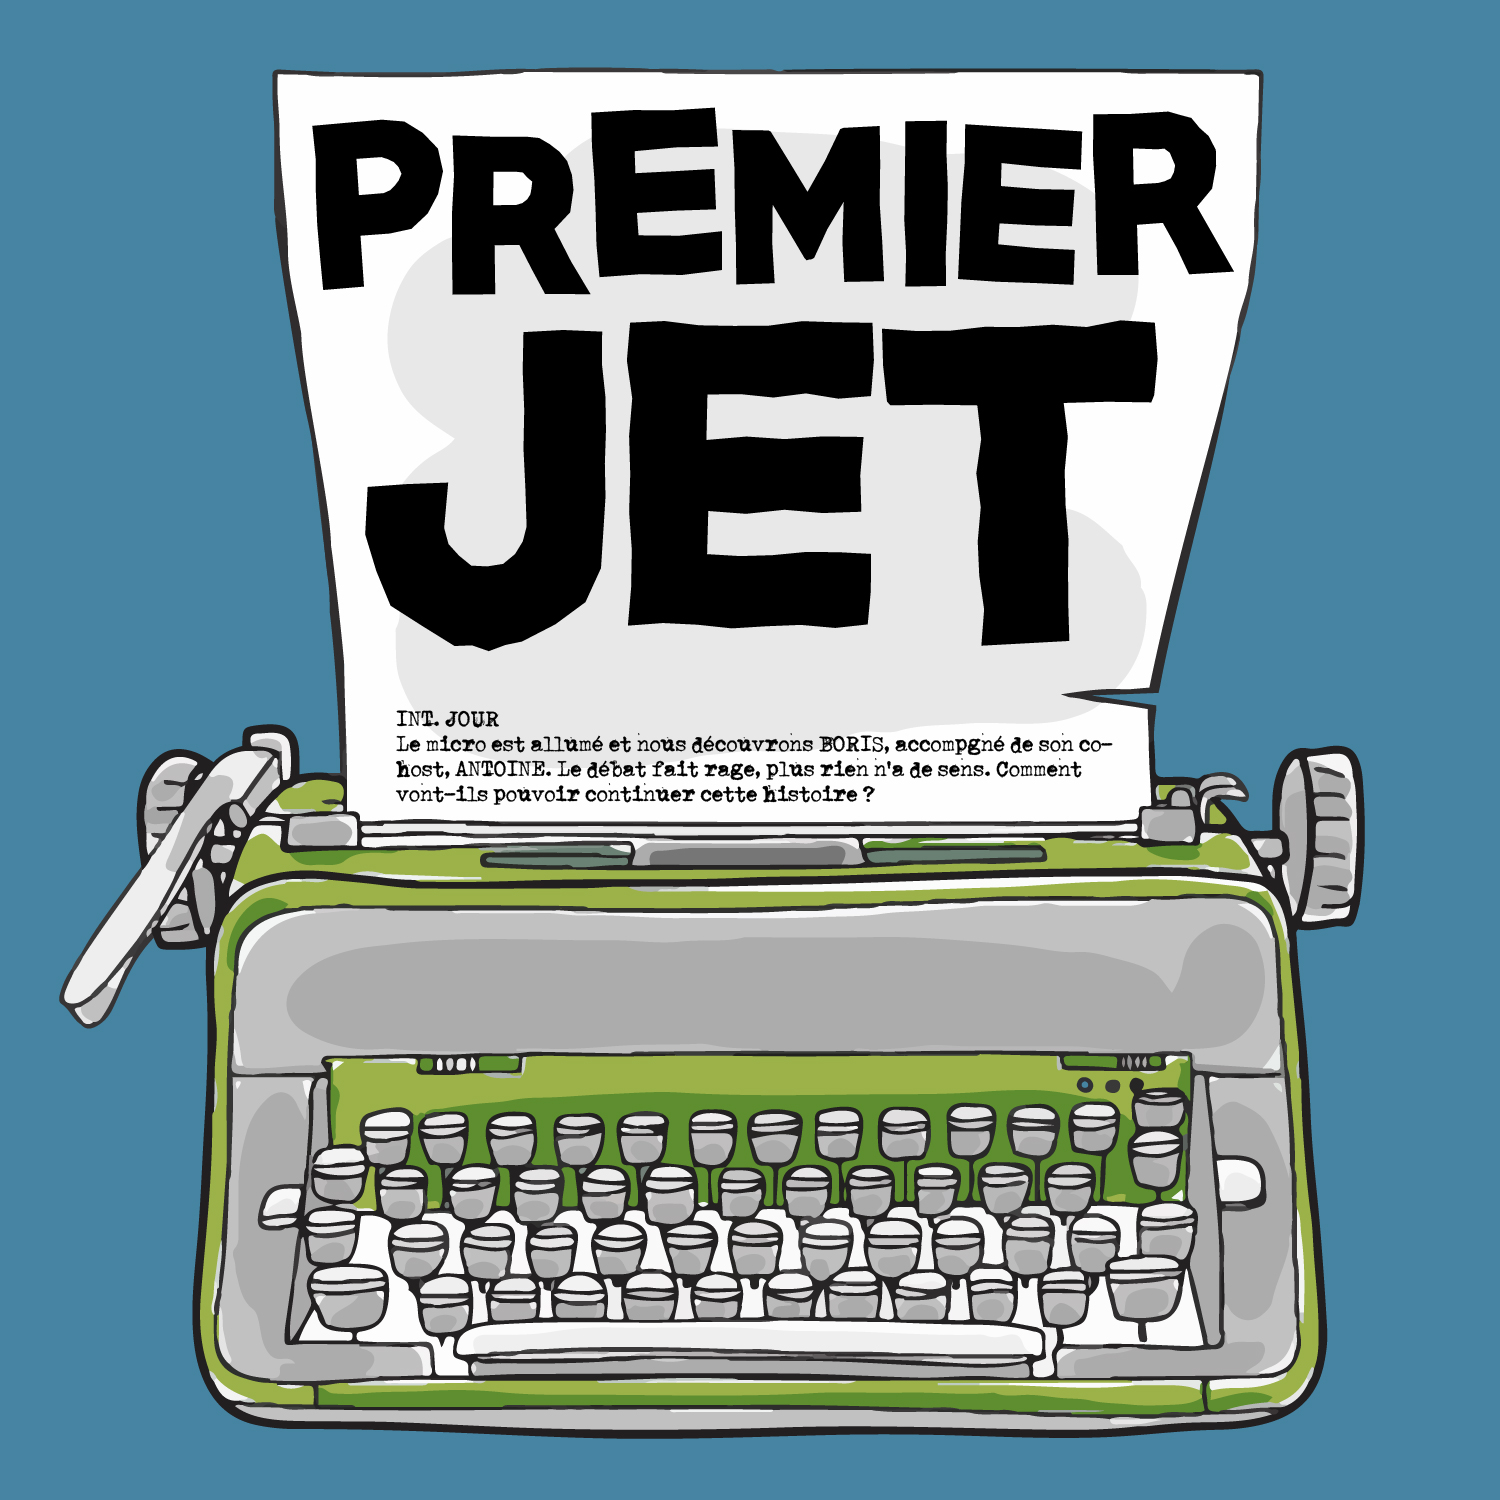 Premier Jet